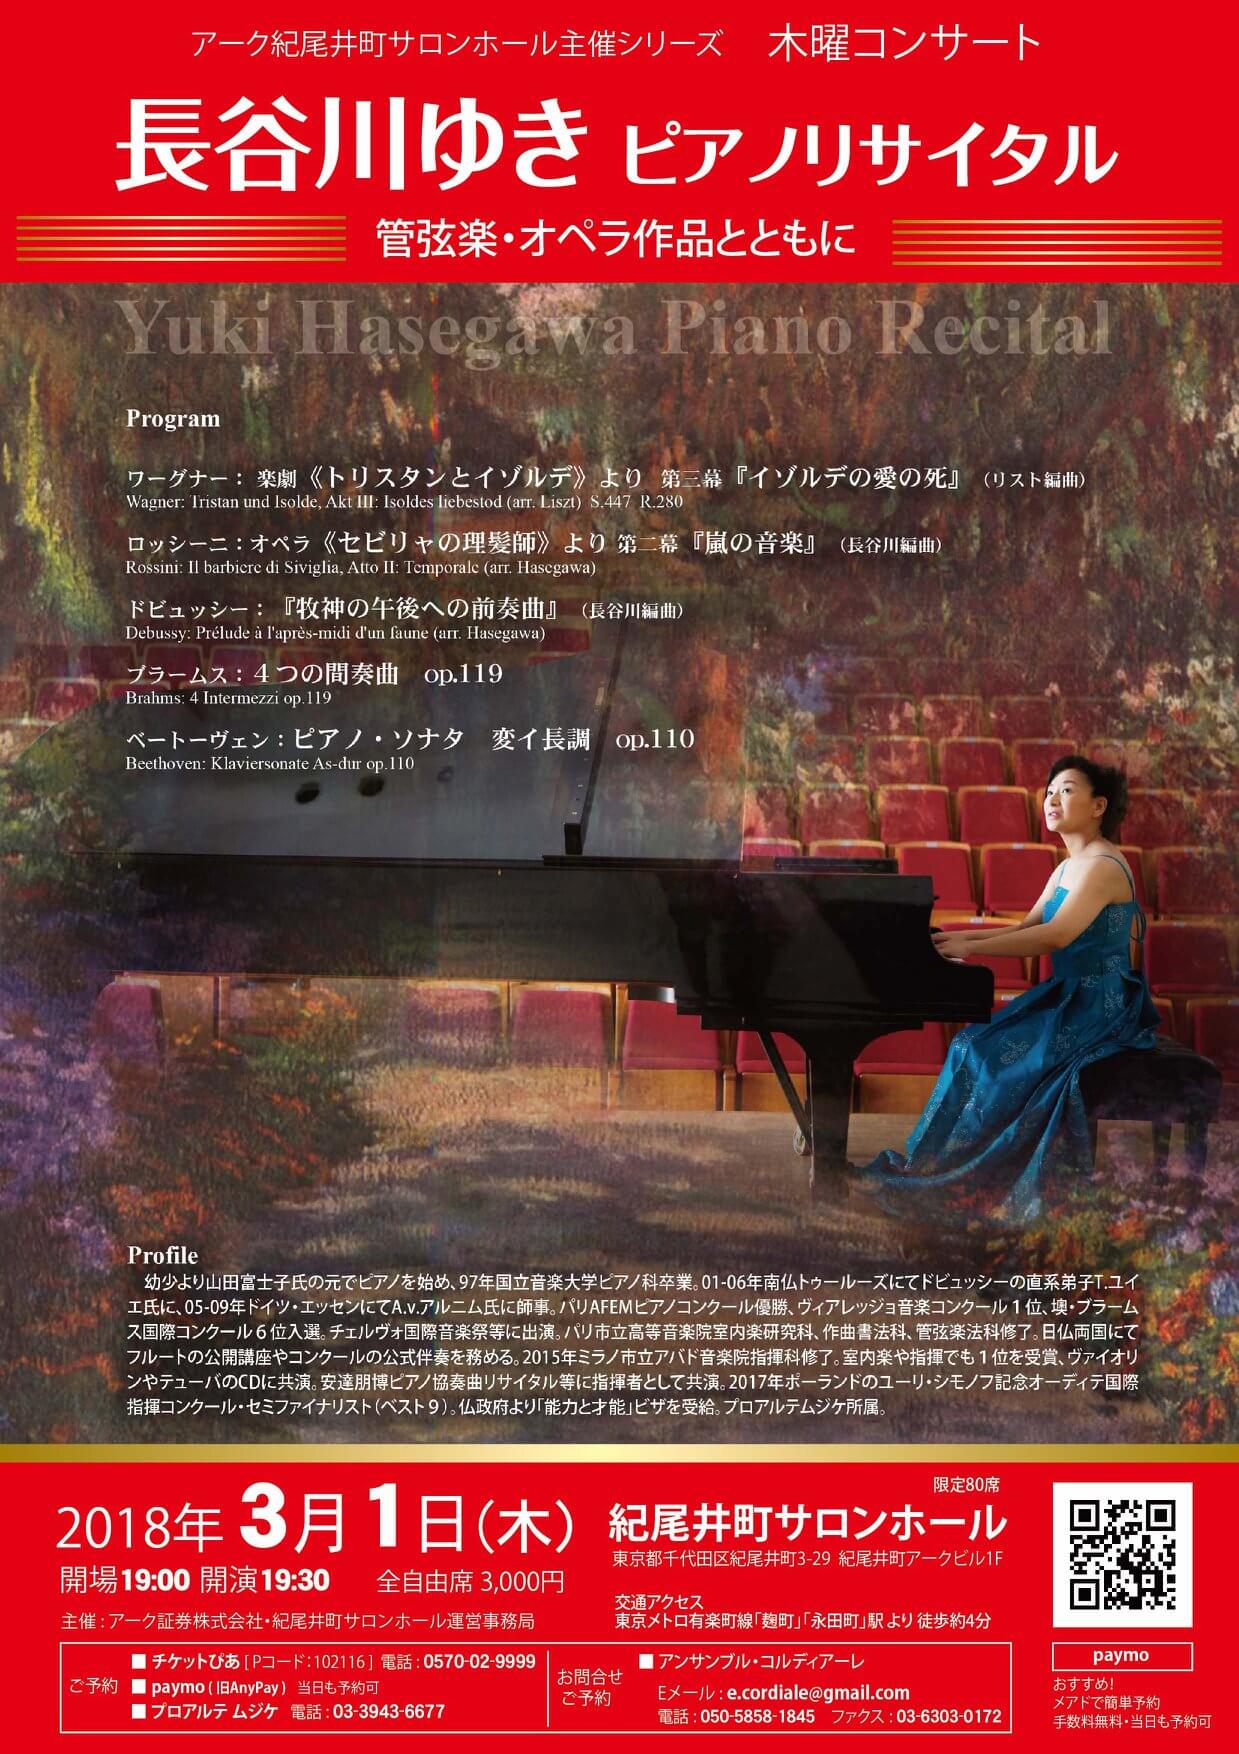 Yuki Hasegawa Piano Recital hosted by ARK Kioicho